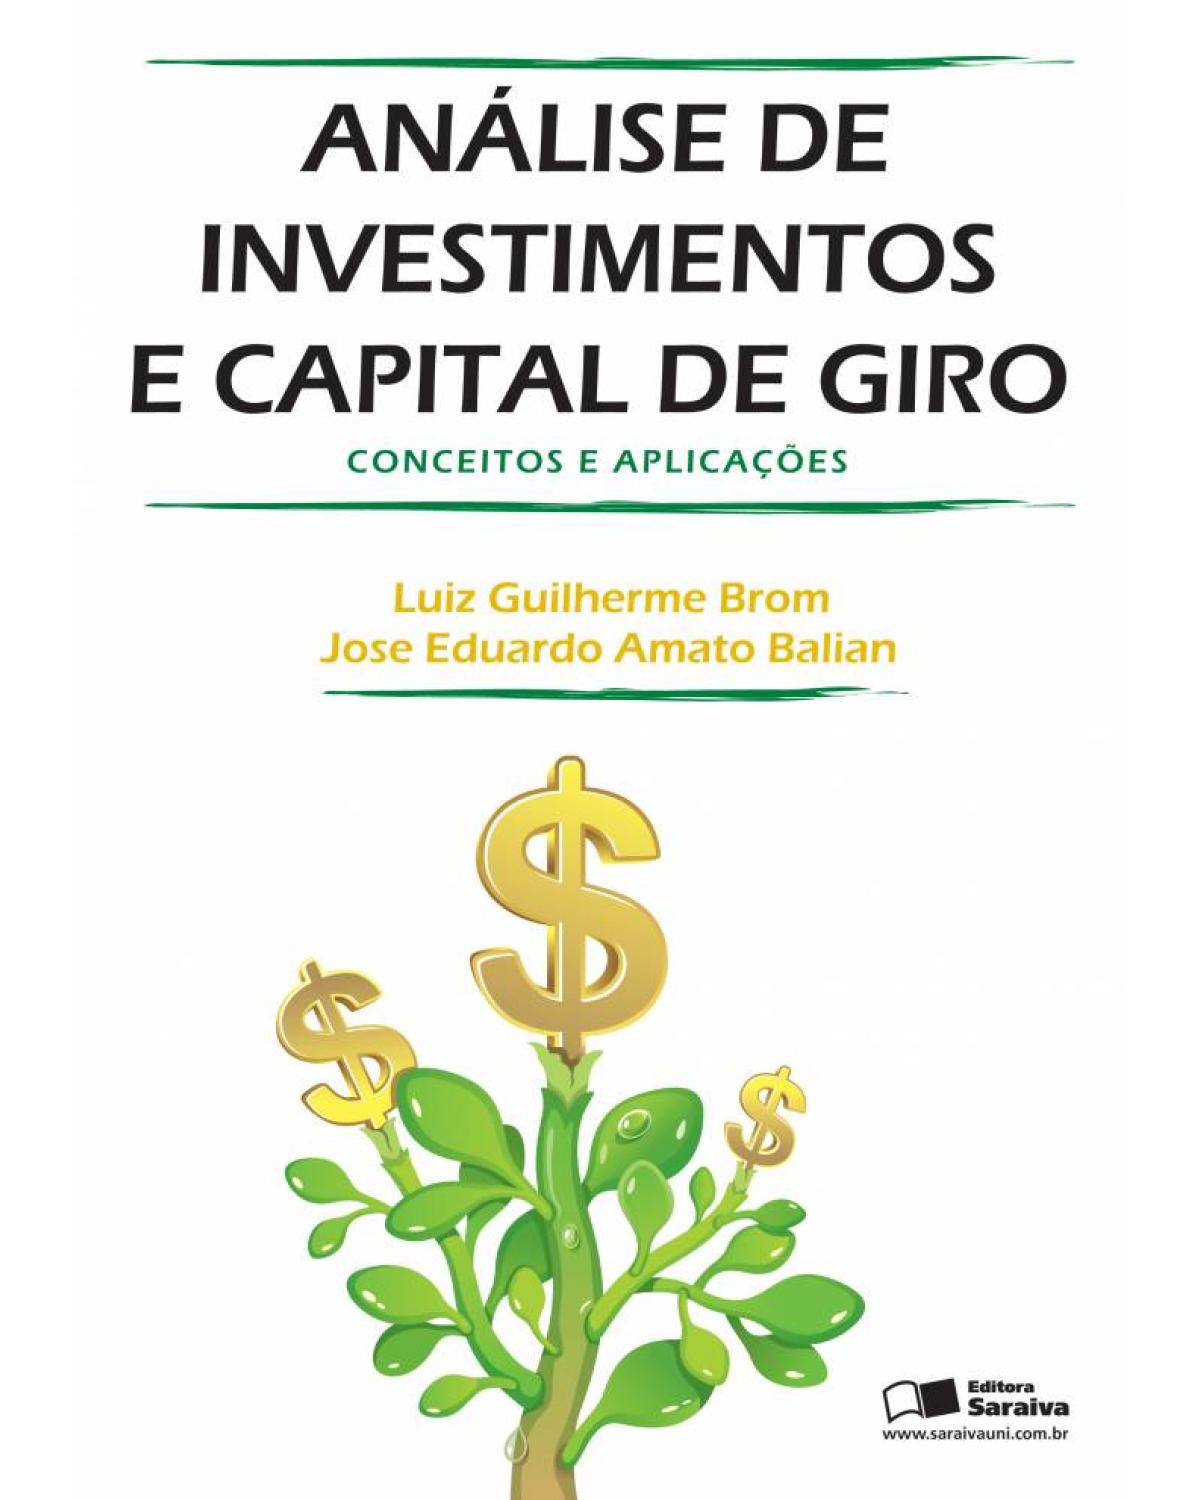 Análise de investimentos e capital de giro - conceitos e aplicações - 1ª Edição | 2007